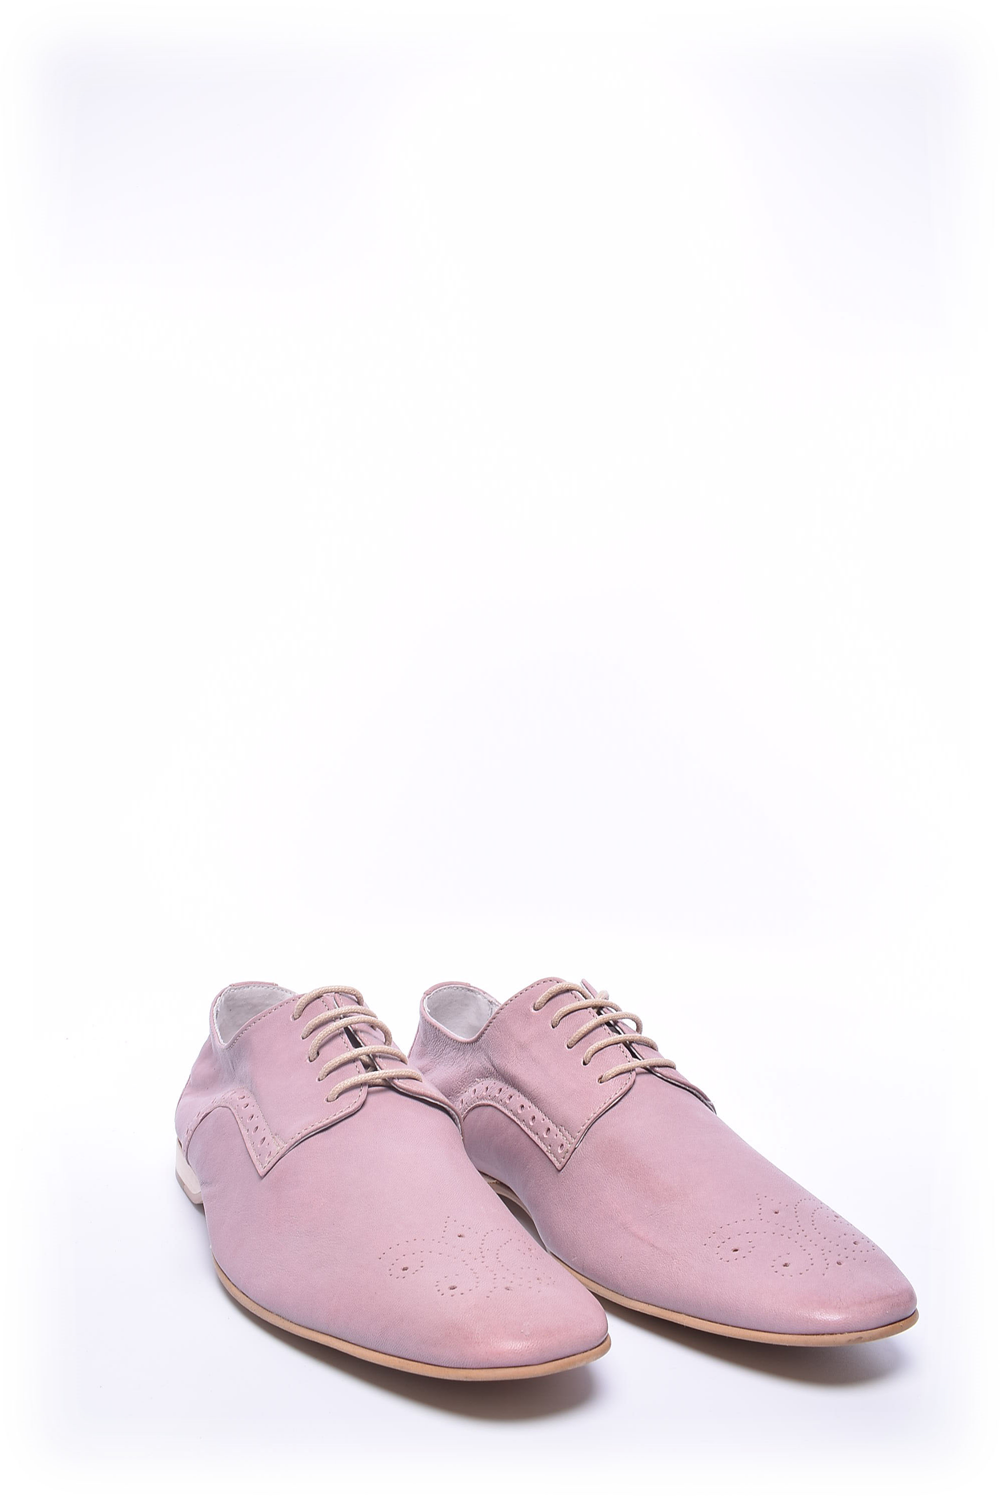 Pantofi dama [3]